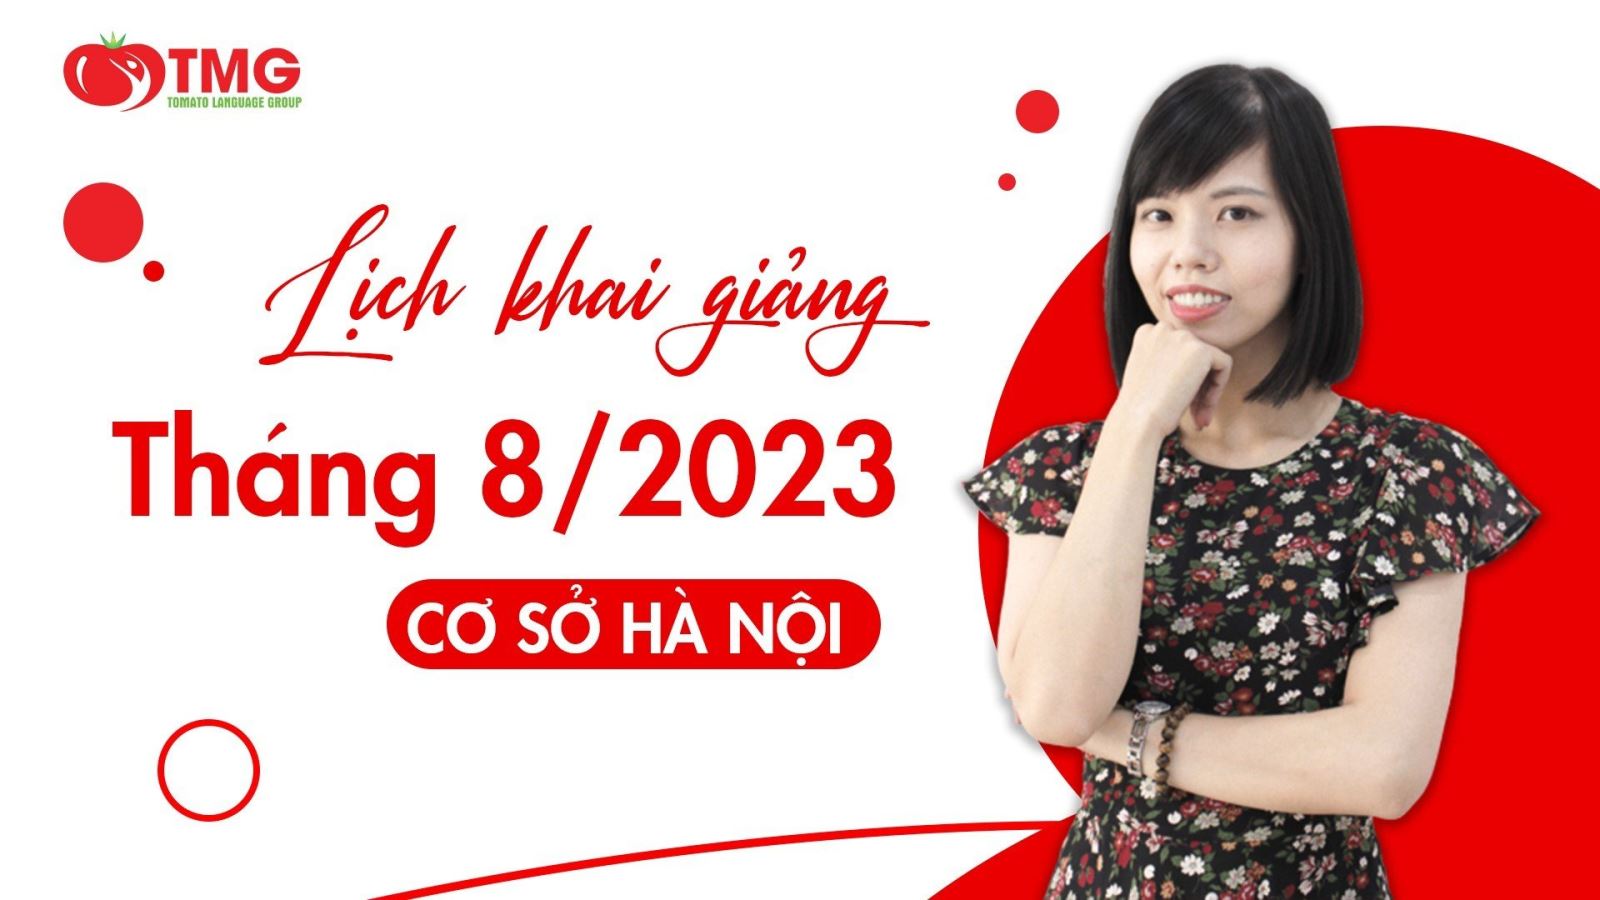 Lịch khai giảng tháng 8/2023 Trung tâm ngoại ngữ Tomato cơ sở Hà Nội 